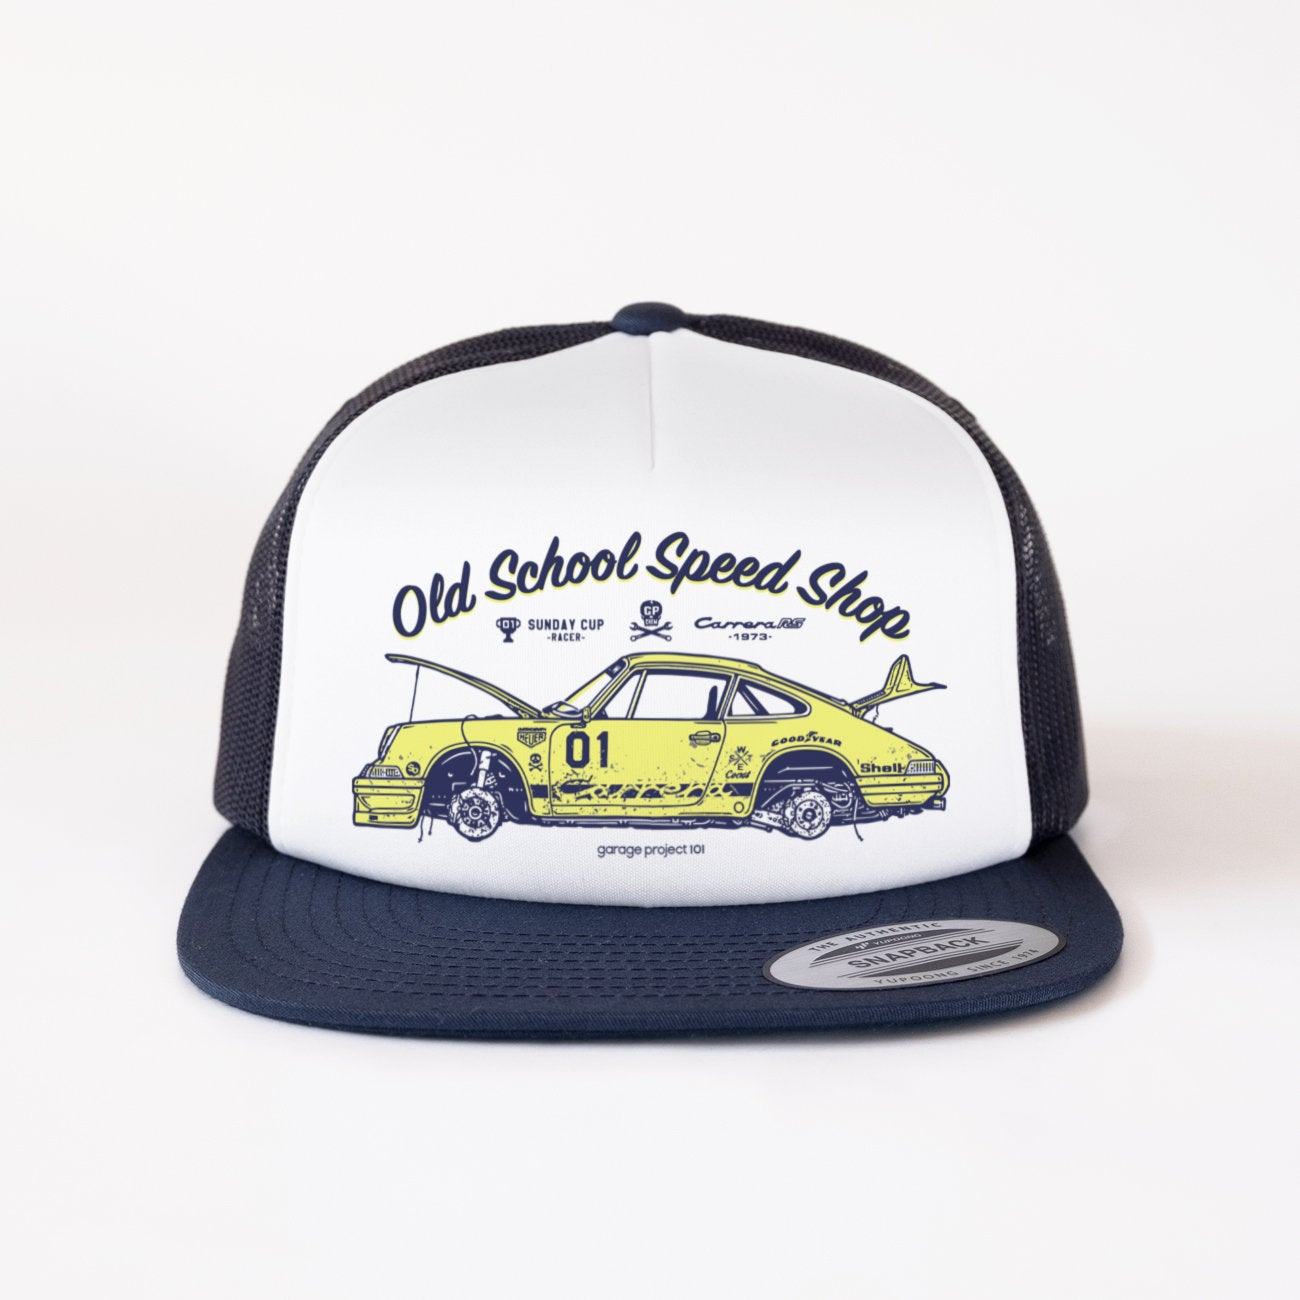 Gp Crew 001 - Old School Speed Shop Trucker Classic Cap